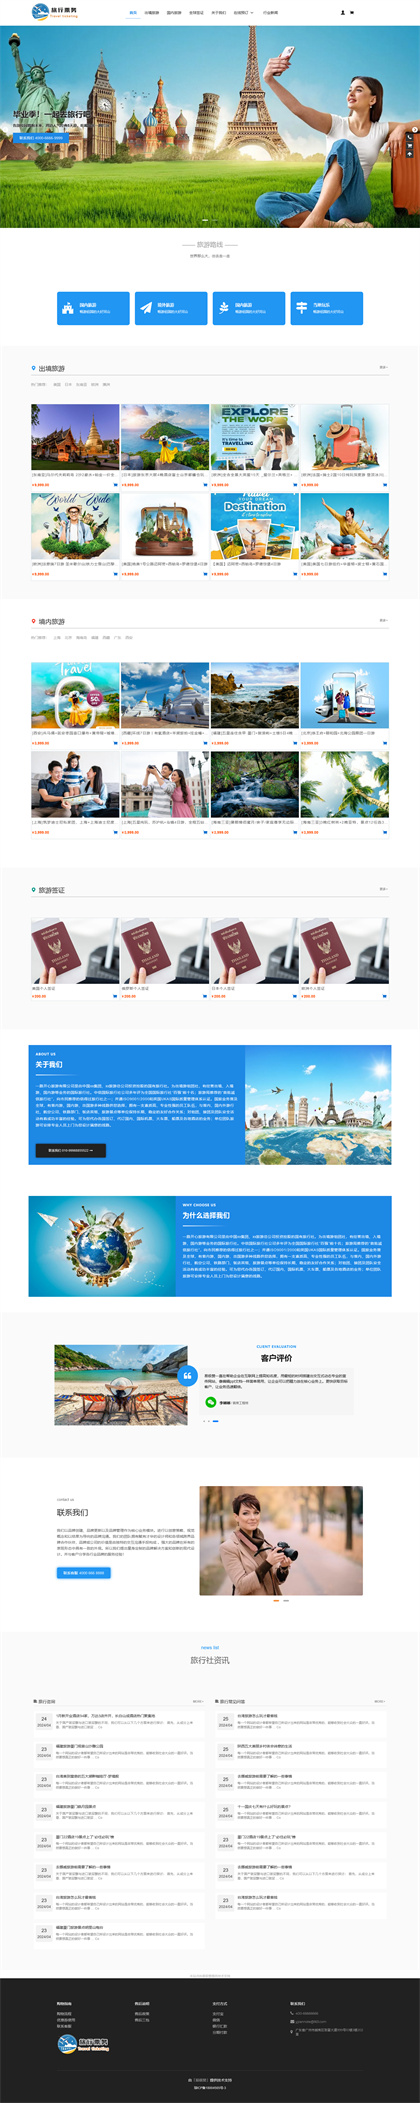 旅行社票务系统-旅游团-旅游网站-旅游公司商城网站模板网站模板图片